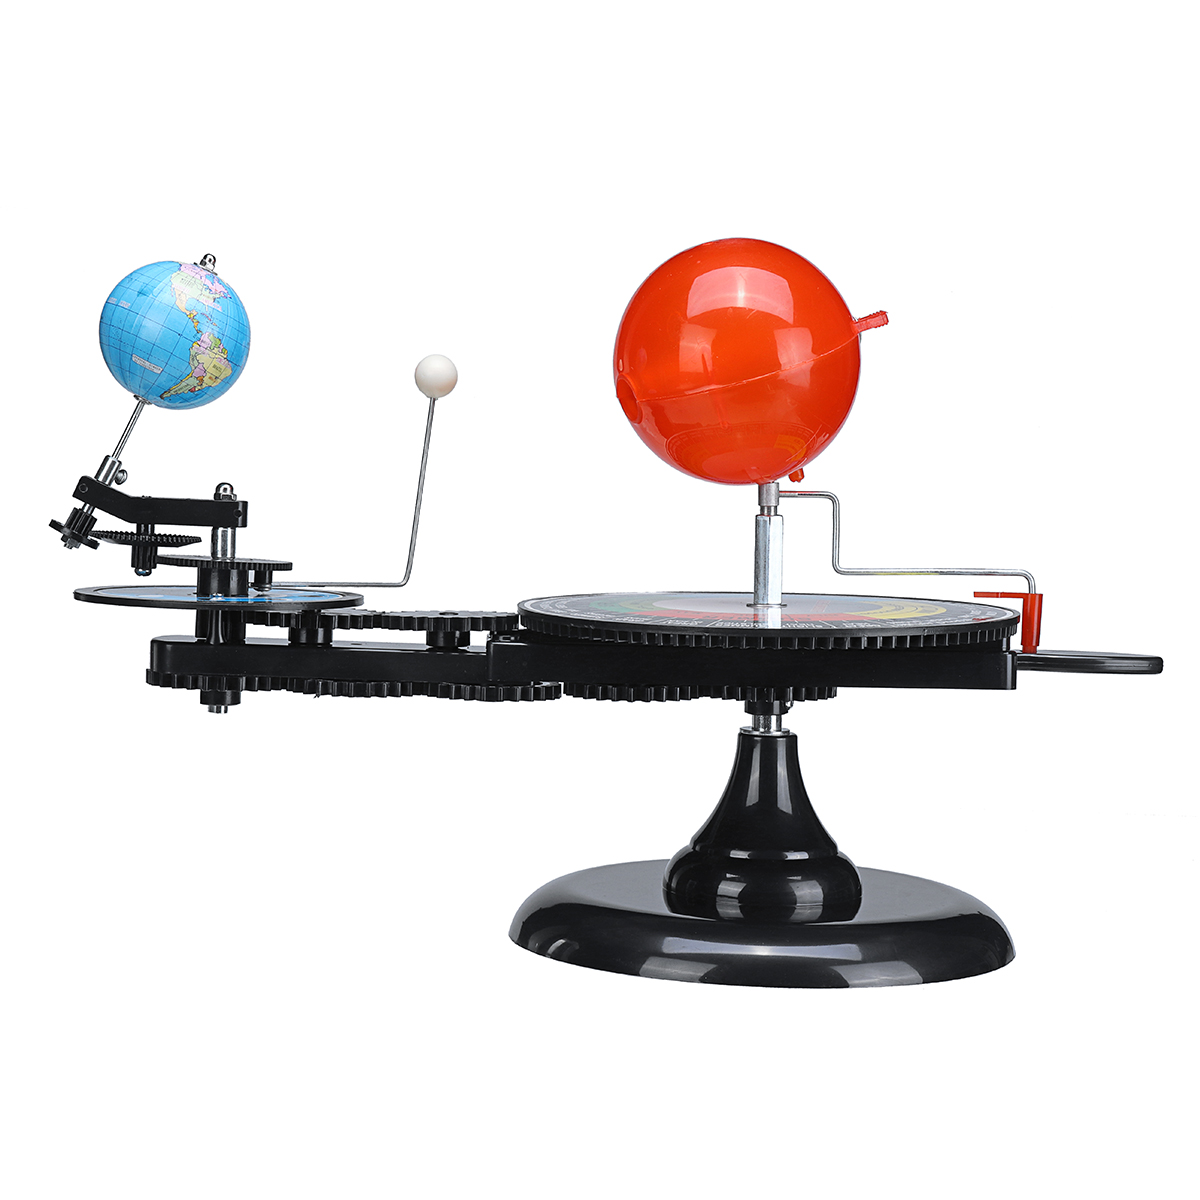 

Солнечная Система Орбита Солнце Земля Луна Орбитальный Планетарий Модель Наука Игрушка Дети Развивающие игрушки Трек